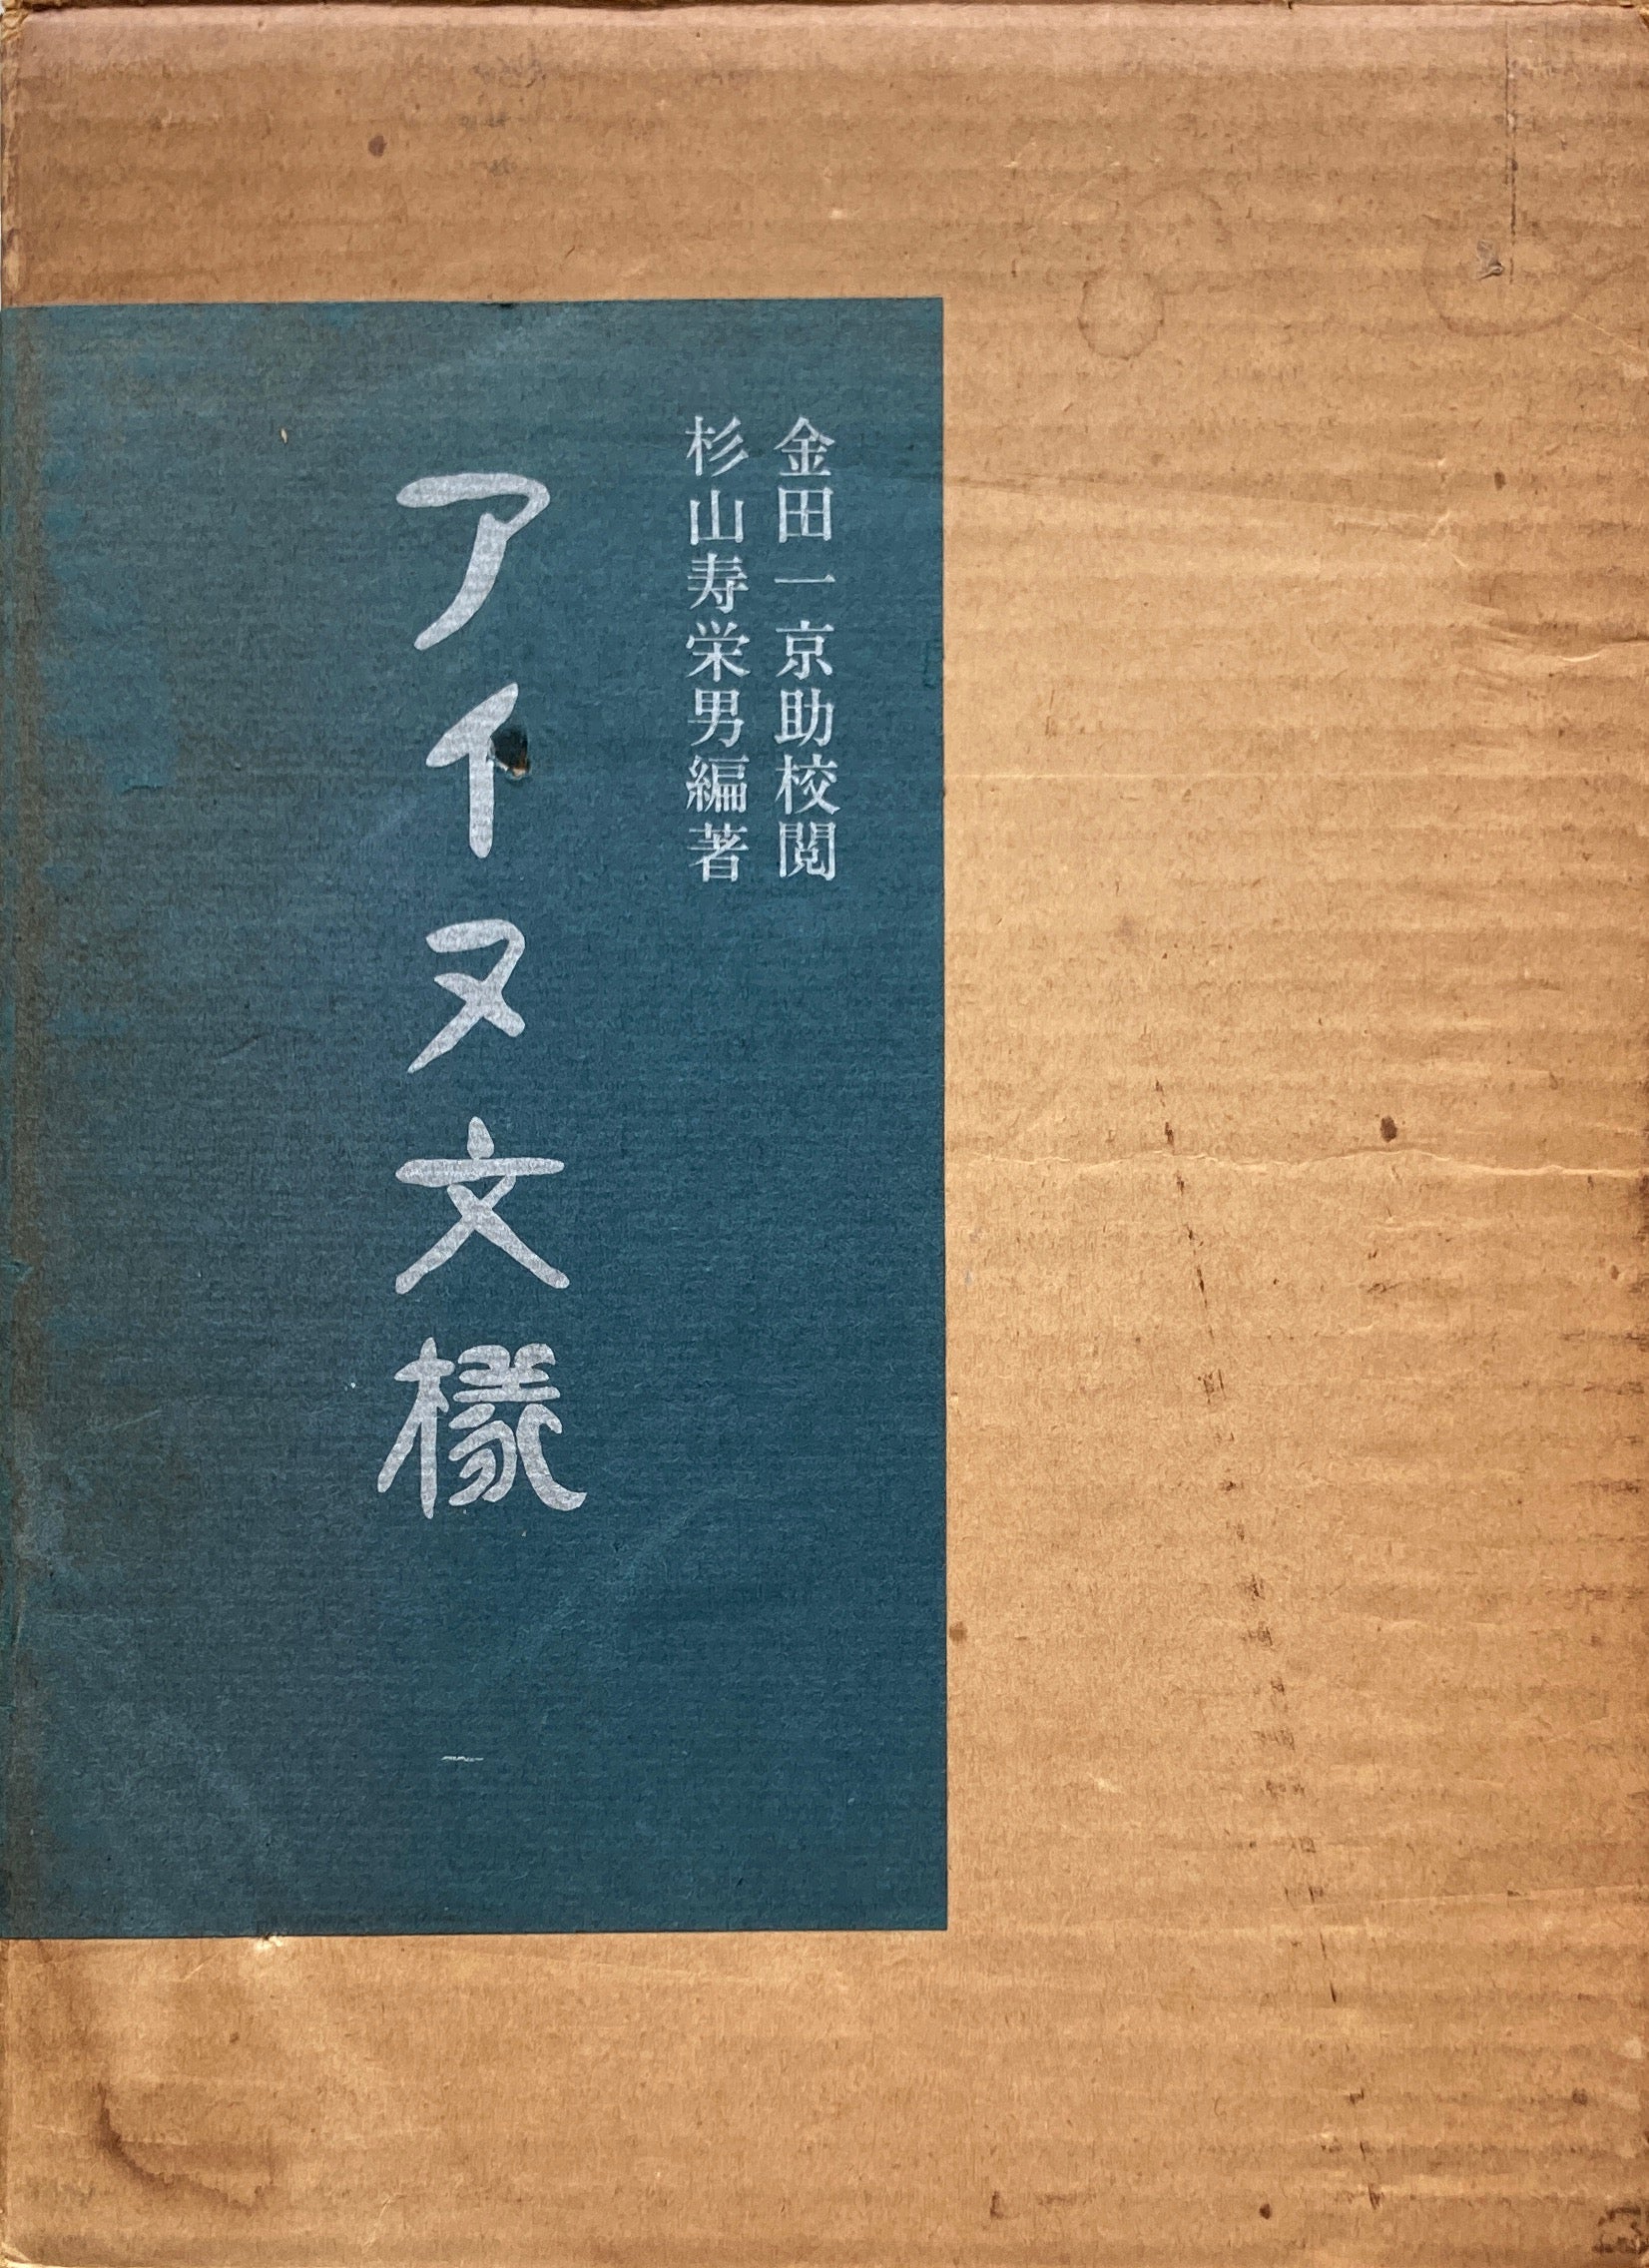 アイヌ文様 金田一京助 杉山寿栄男 昭和49年復刻版 – smokebooks shop